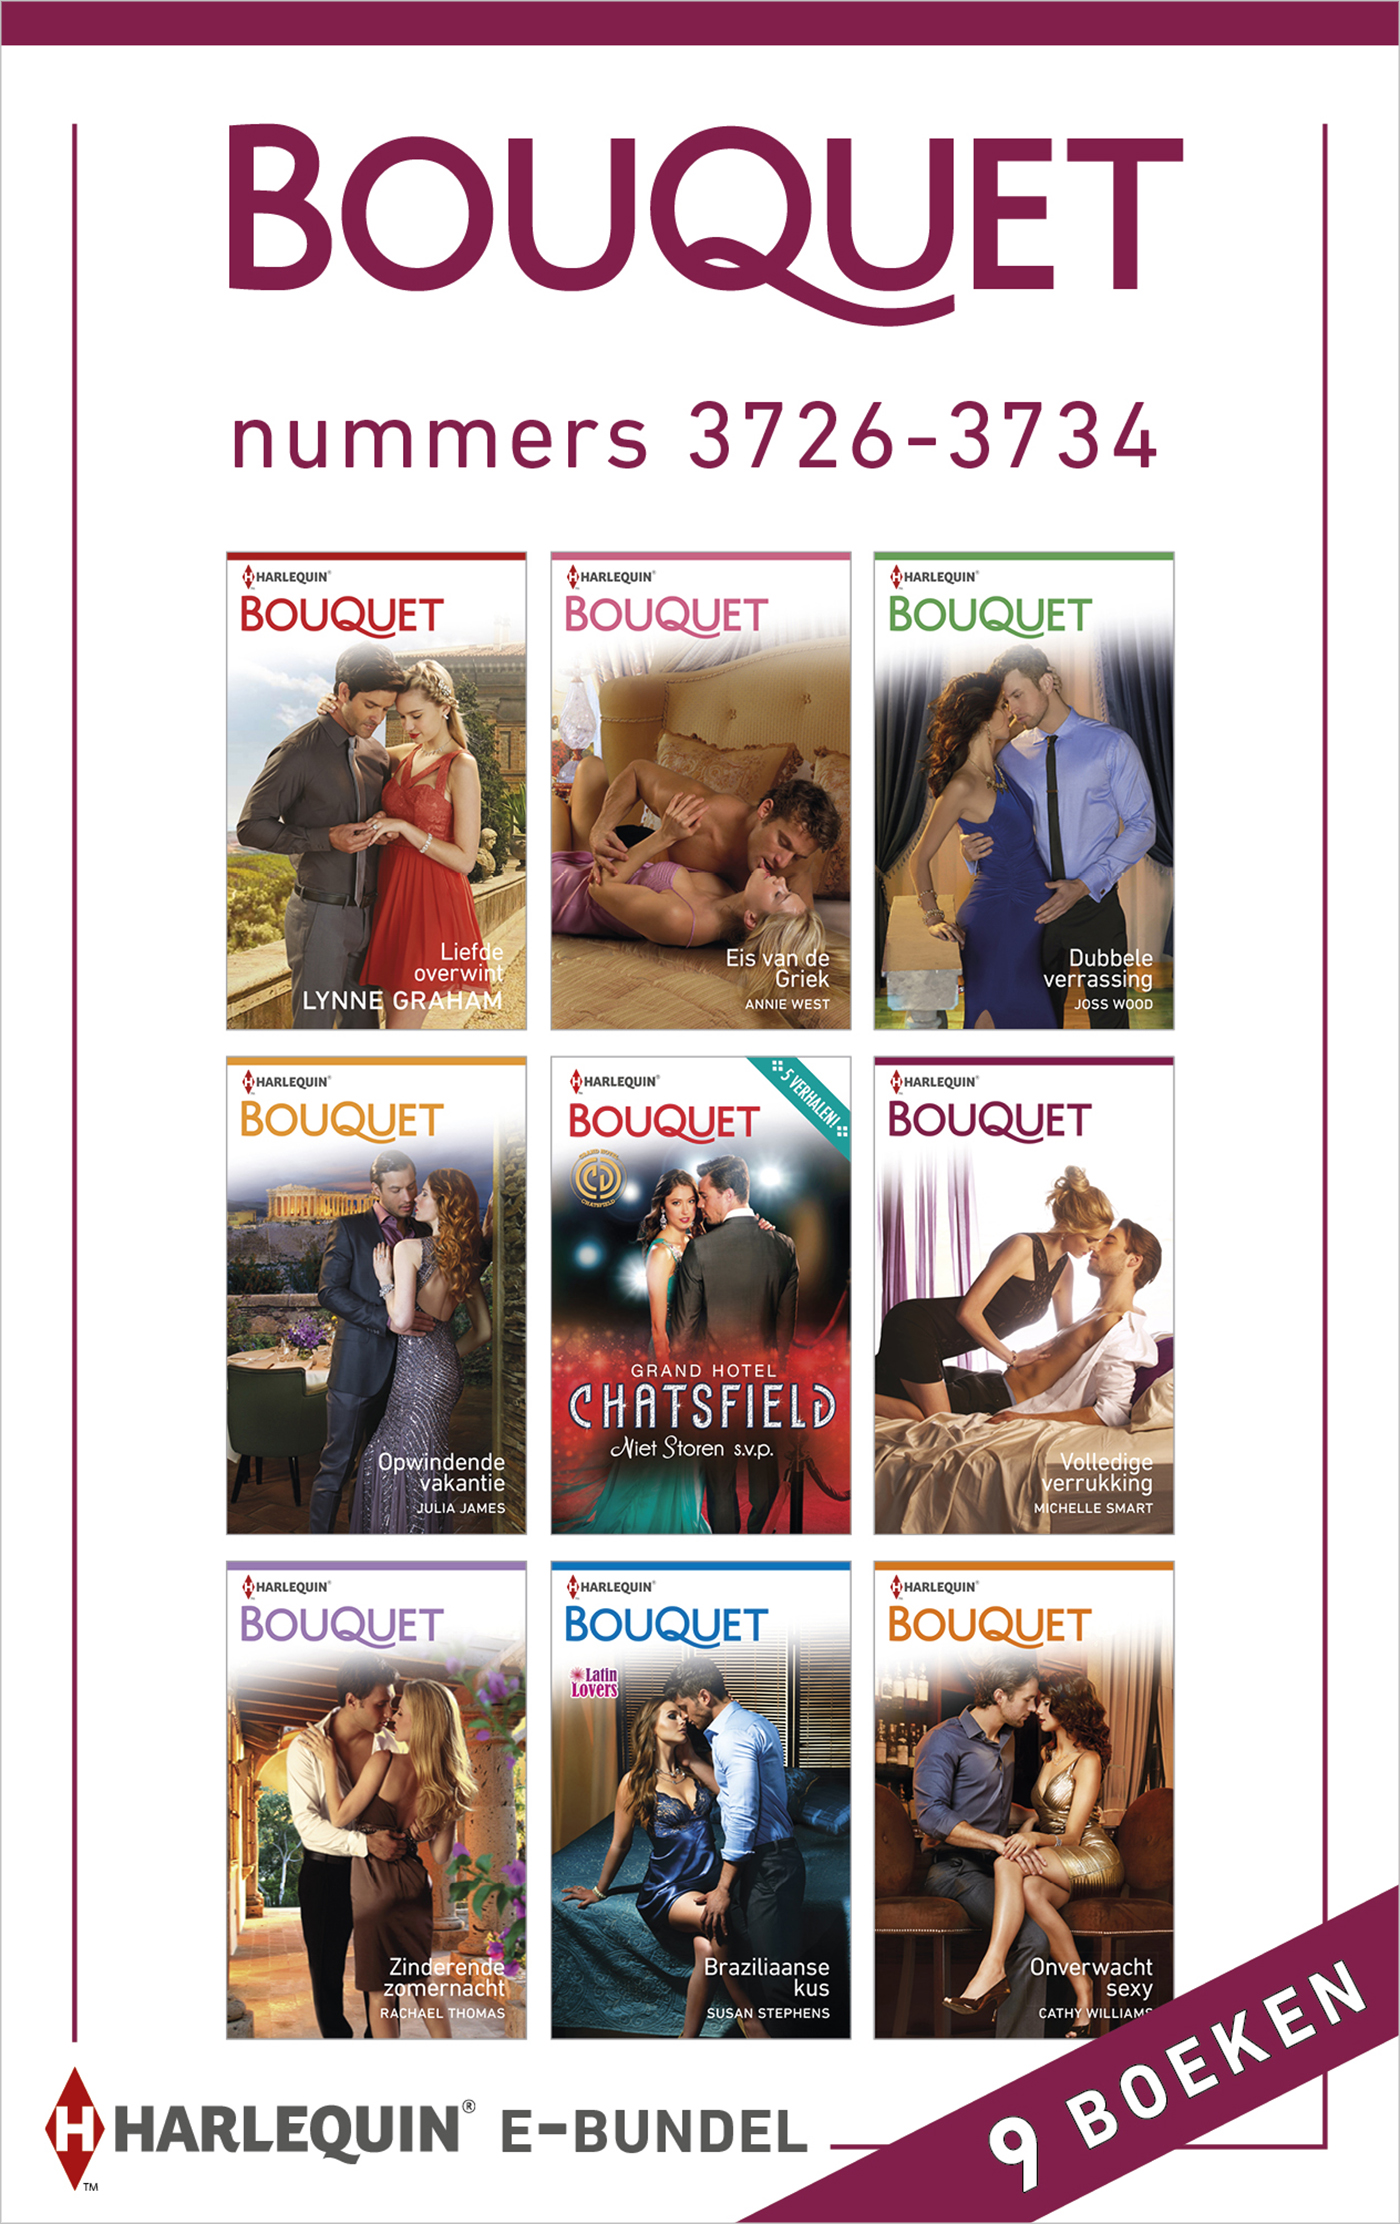 Bouquet e-bundel nummers 3726-3734 (9-in-1)